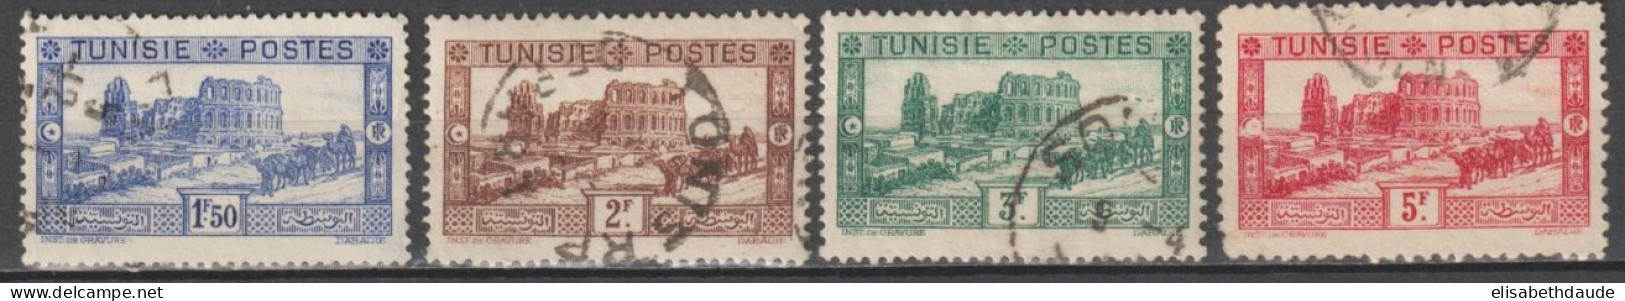 TUNISIE - 1931 - YVERT N°175/178 OBLITERES - COTE = 43.75 EUR. - Usati